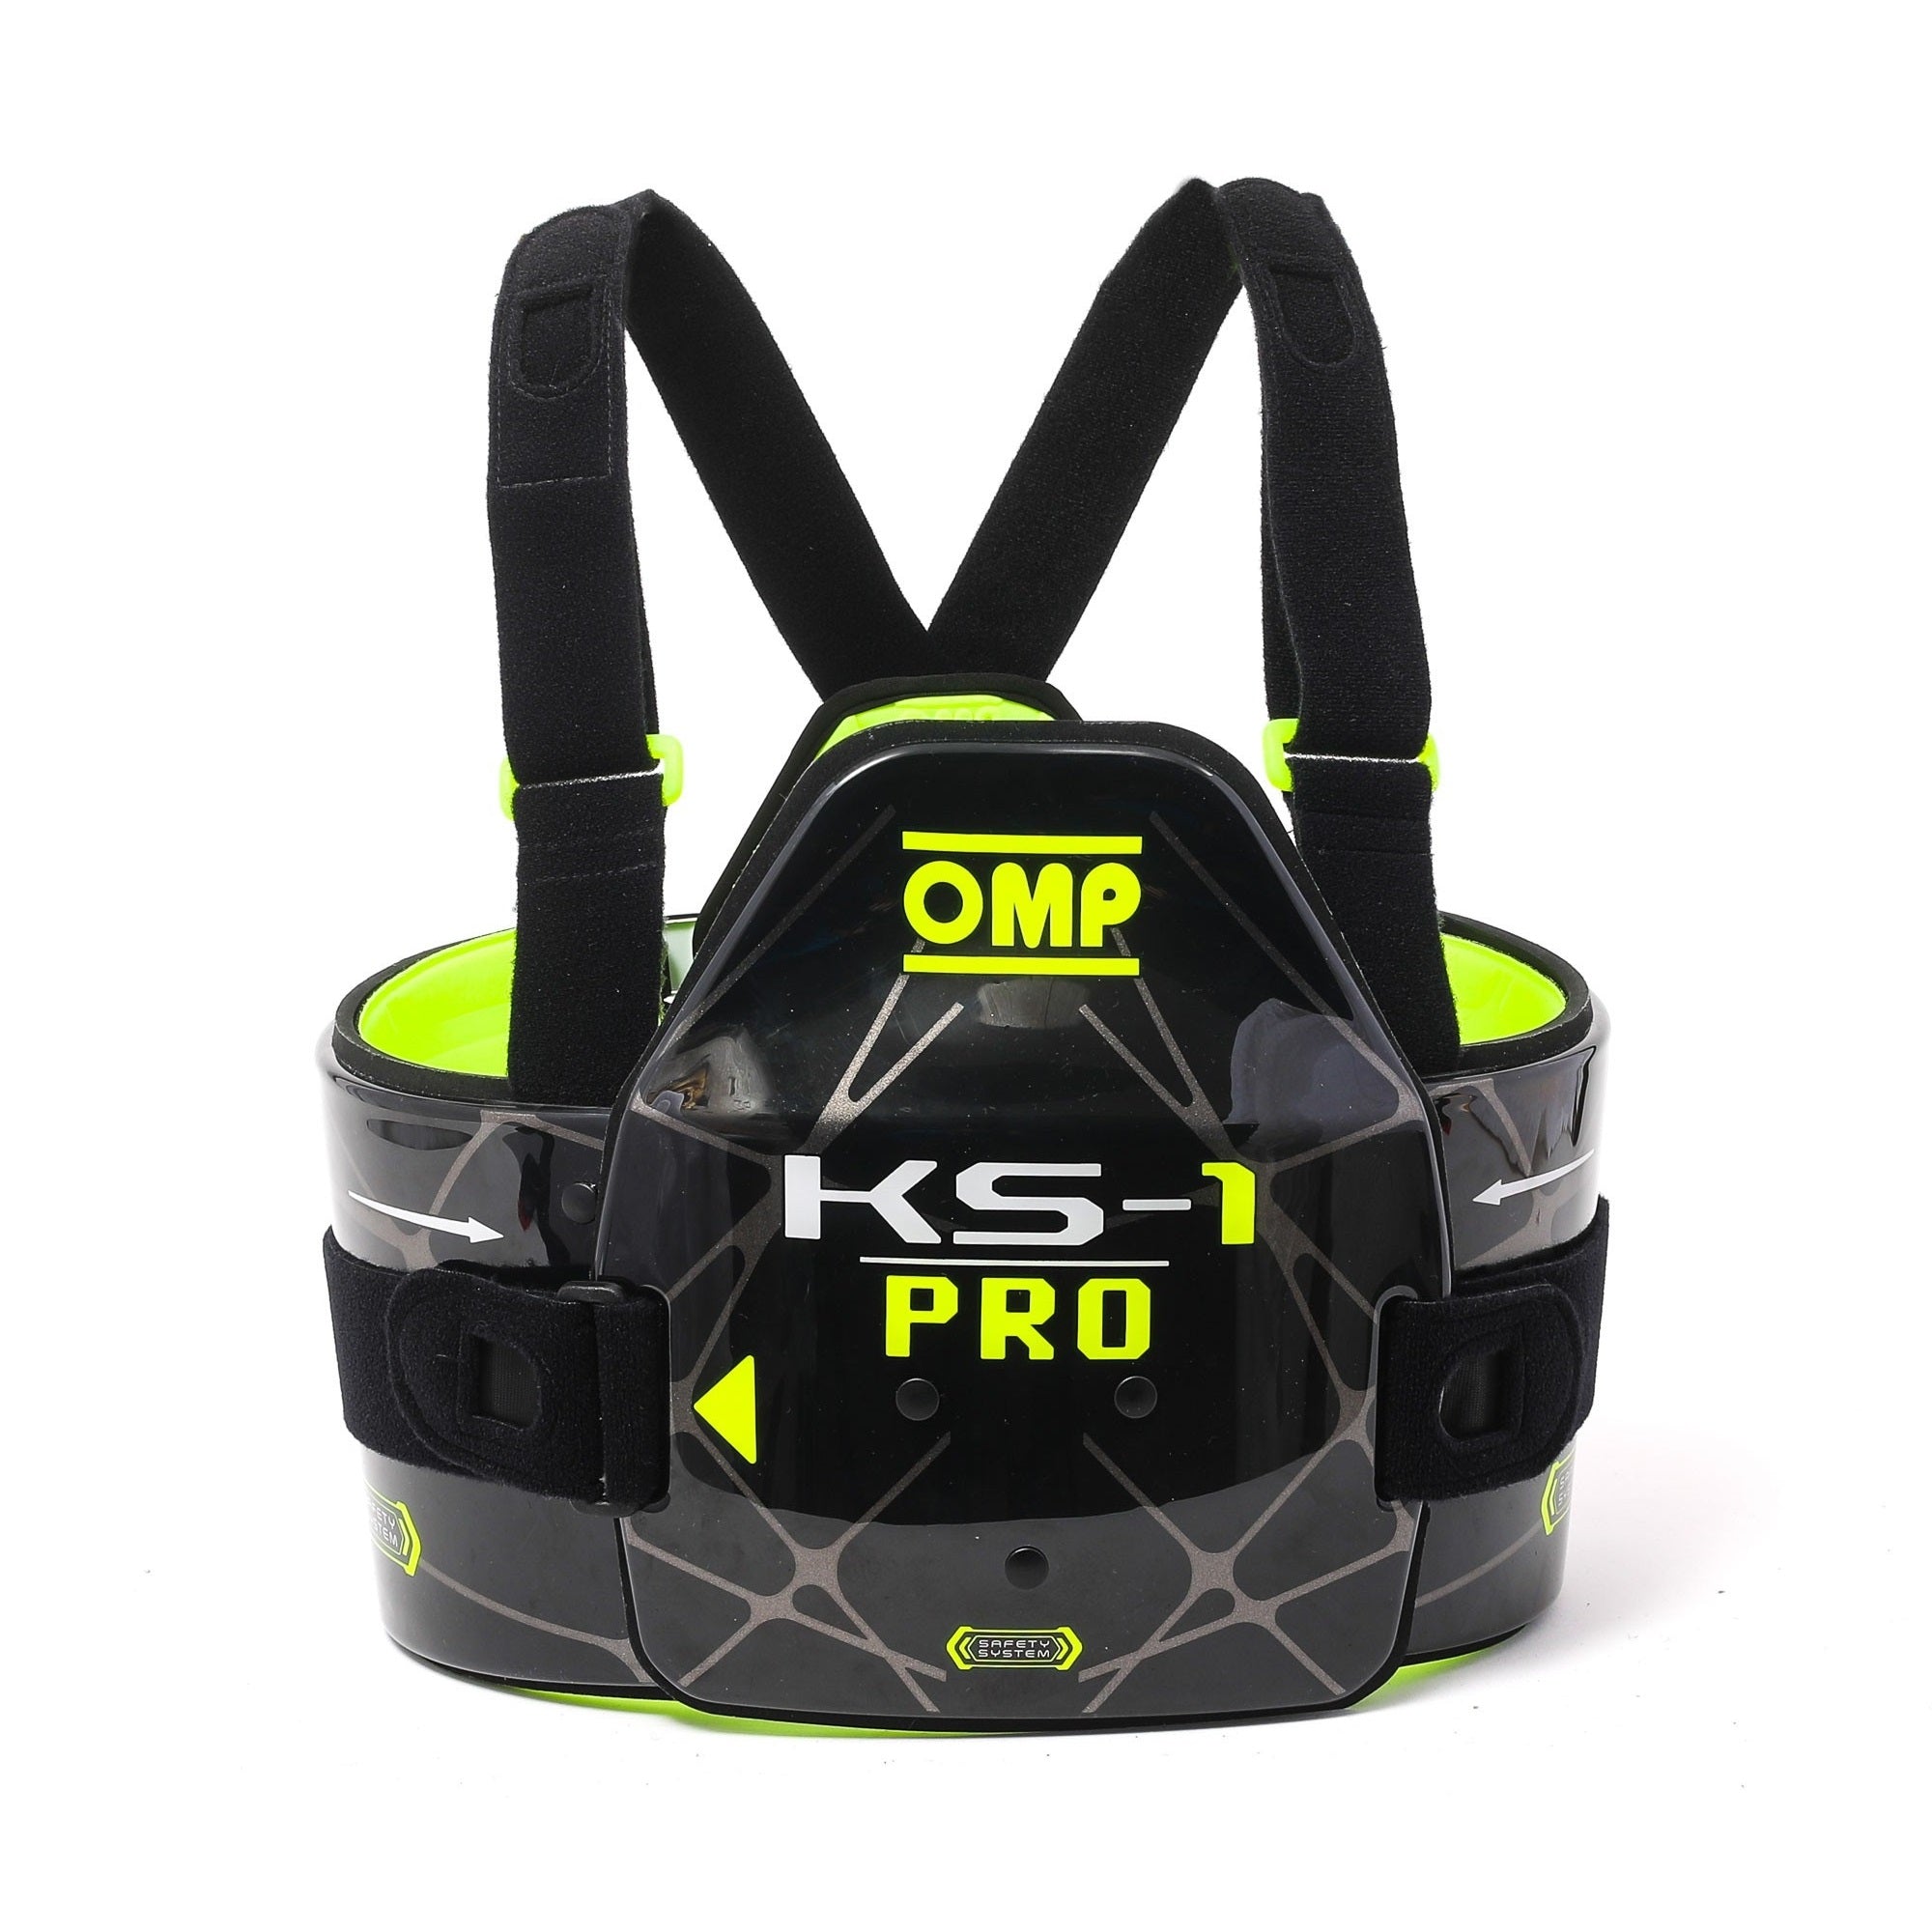 OMP KS-1 Pro Rib Protector